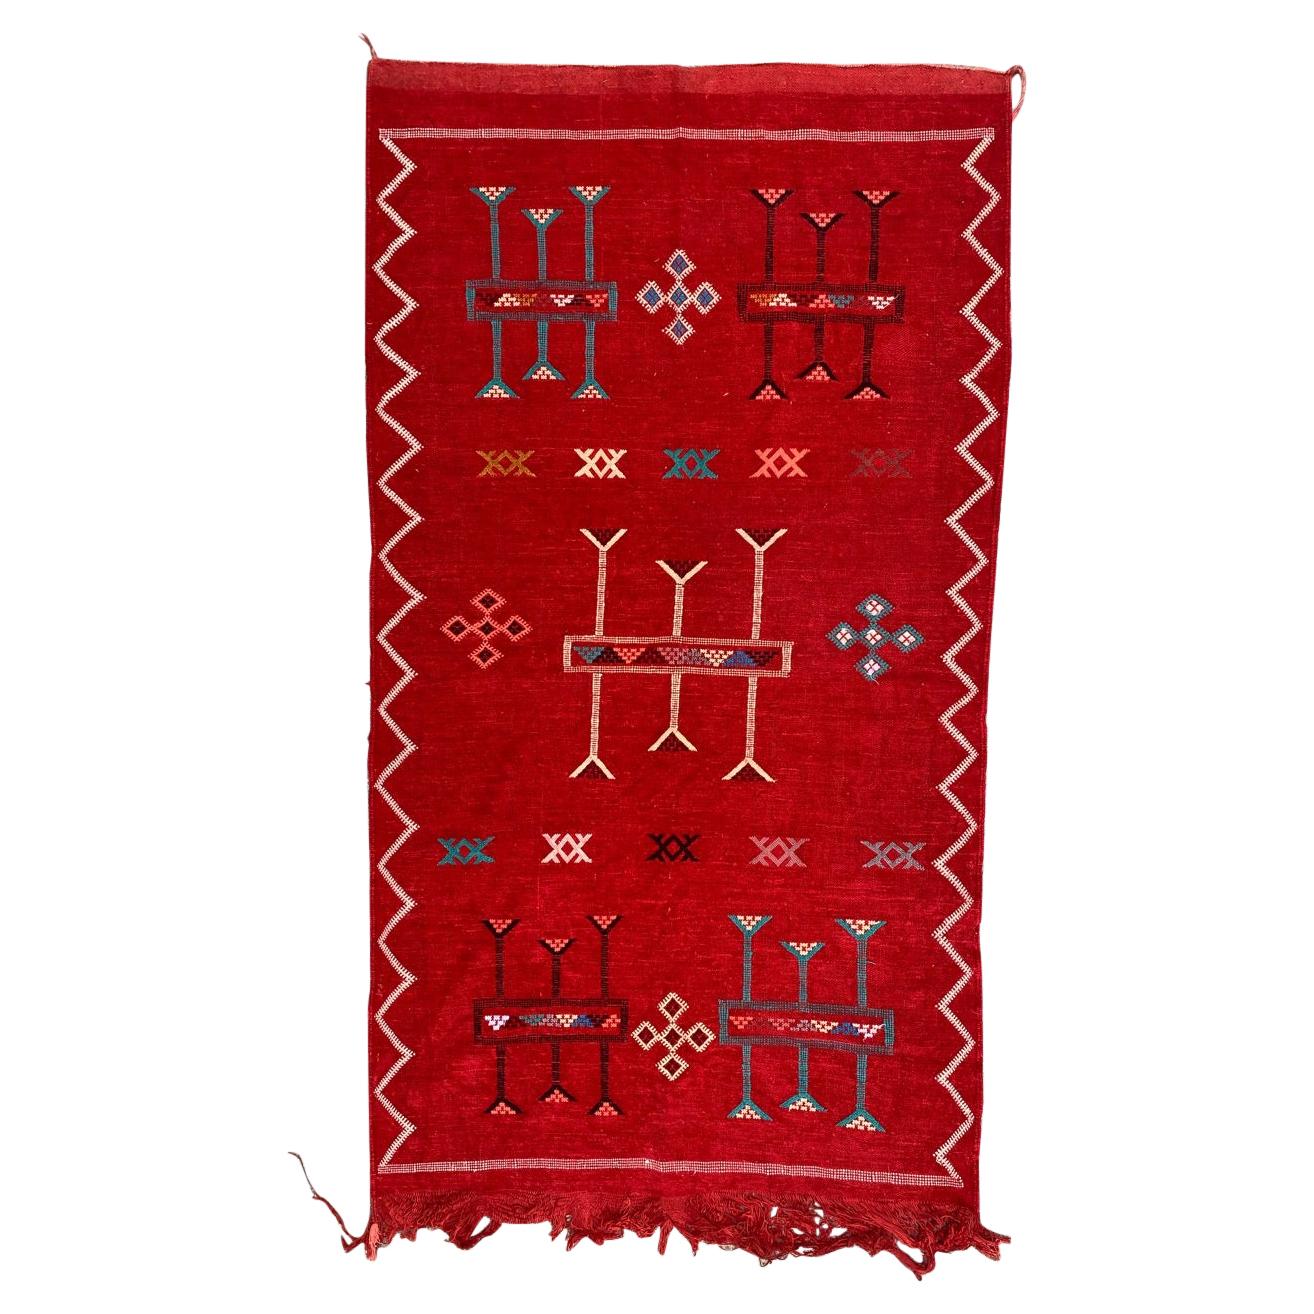 Bobyrug’s Nice Vintage Silk and Cotton Moroccan Kilim